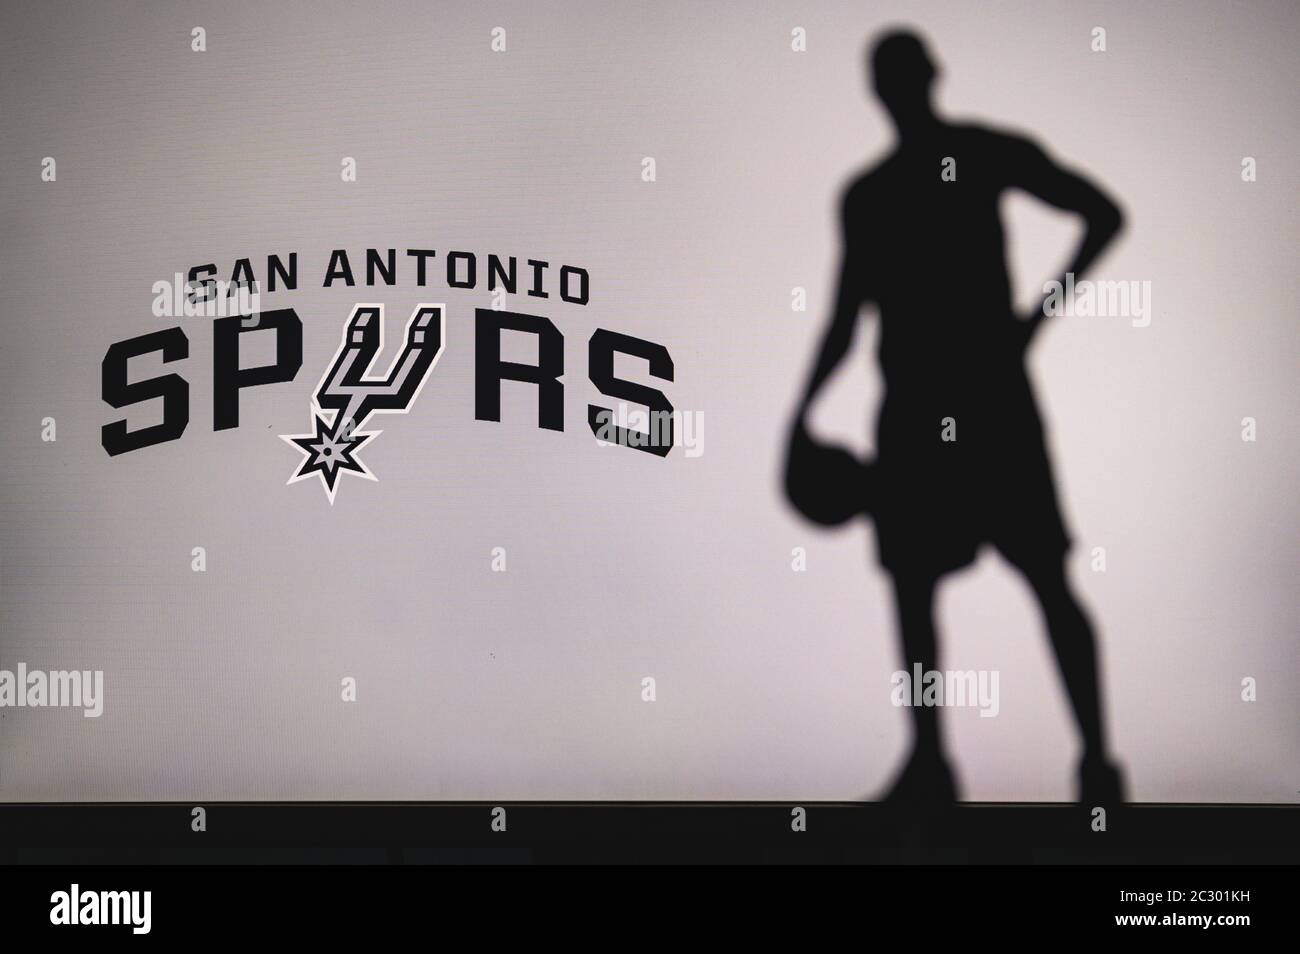 NEW YORK, USA, 18 GIU 2020: San Antonio Spurs logo di club di basket professionale in lega americana. Silhouette del giocatore di basket in primo piano. SpO Foto Stock